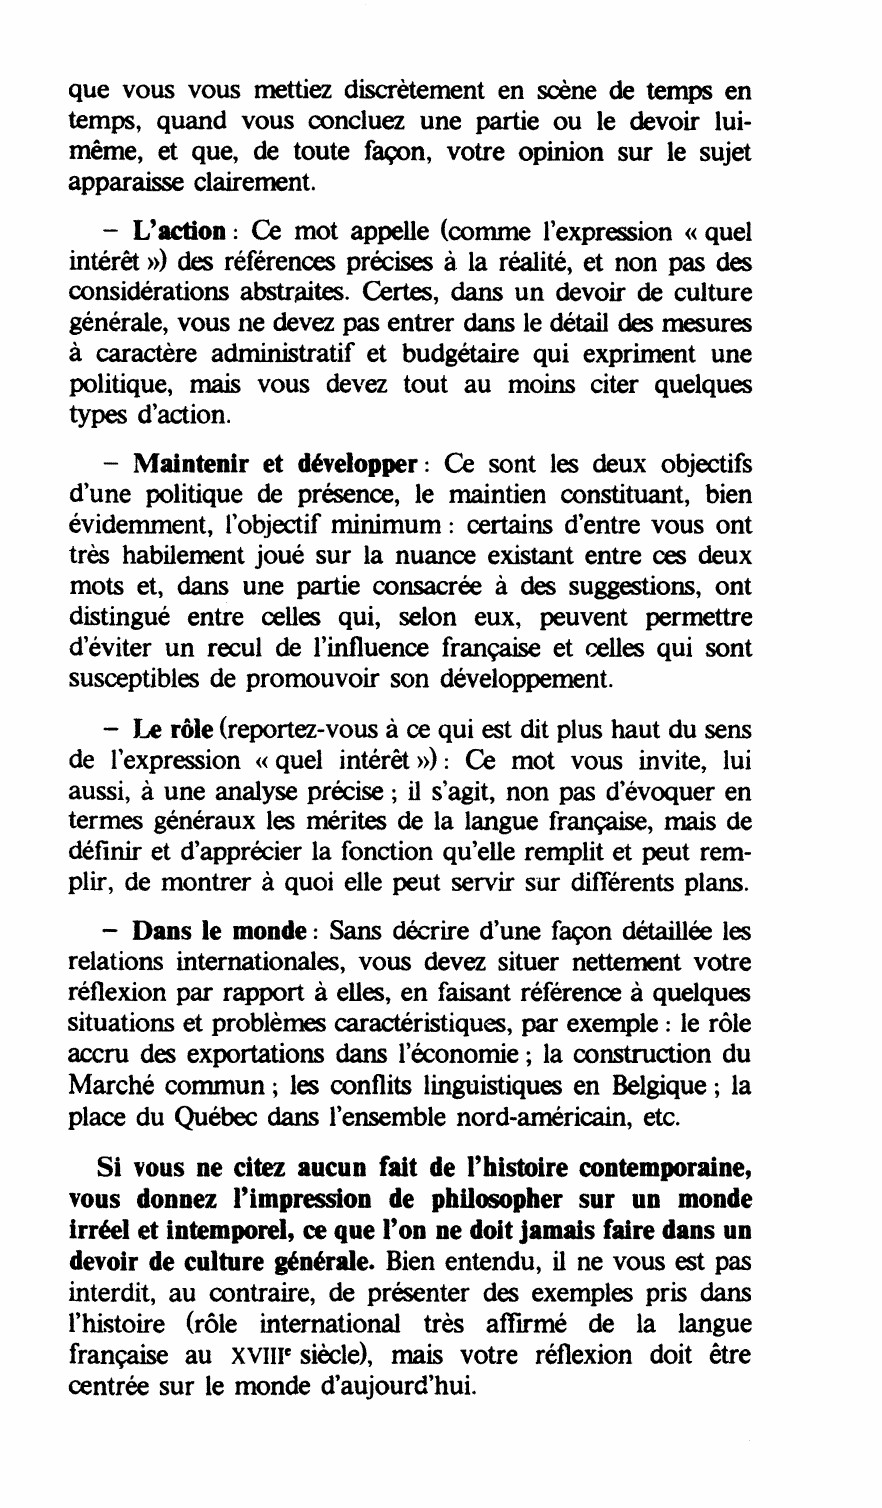 Prévisualisation du document Quel intérêt présente, selon vous, l'action tendant à maintenir et à développer le rôle de la langue française dans le monde ?